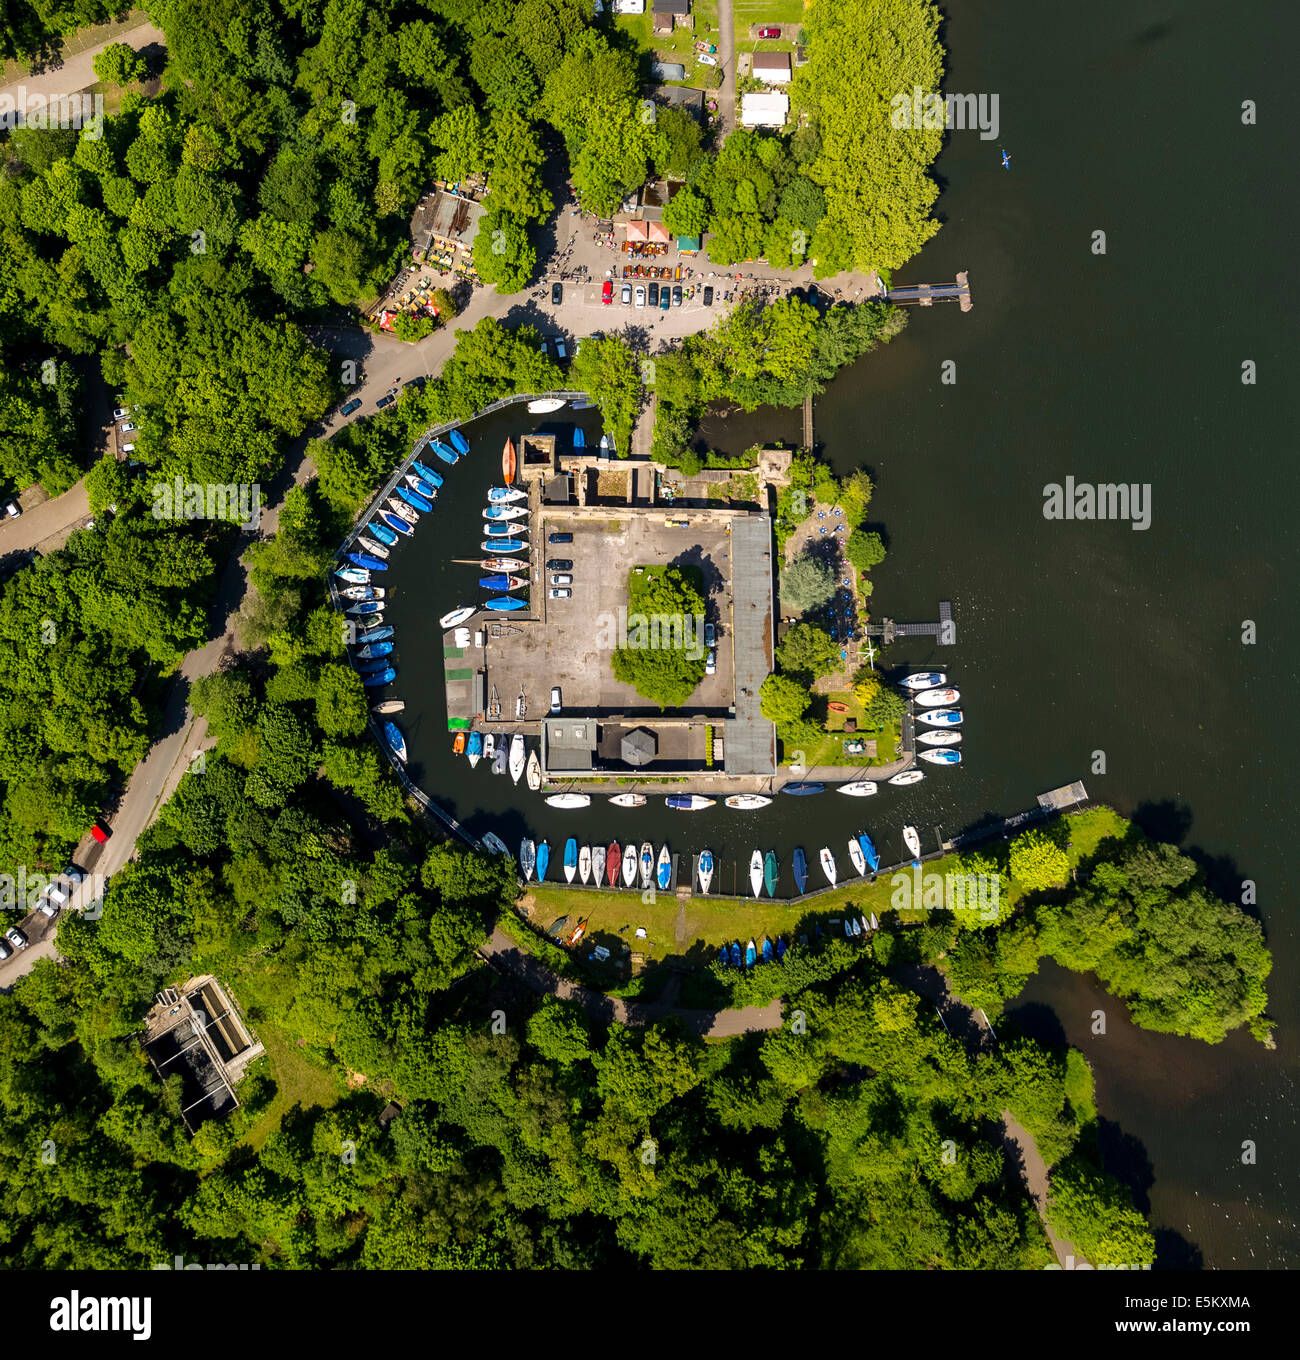 Haus Scheppen manor house on Lake Baldeney, aerial view, Fischlaken, Essen, Ruhr district, North Rhine-Westphalia, Germany Stock Photo